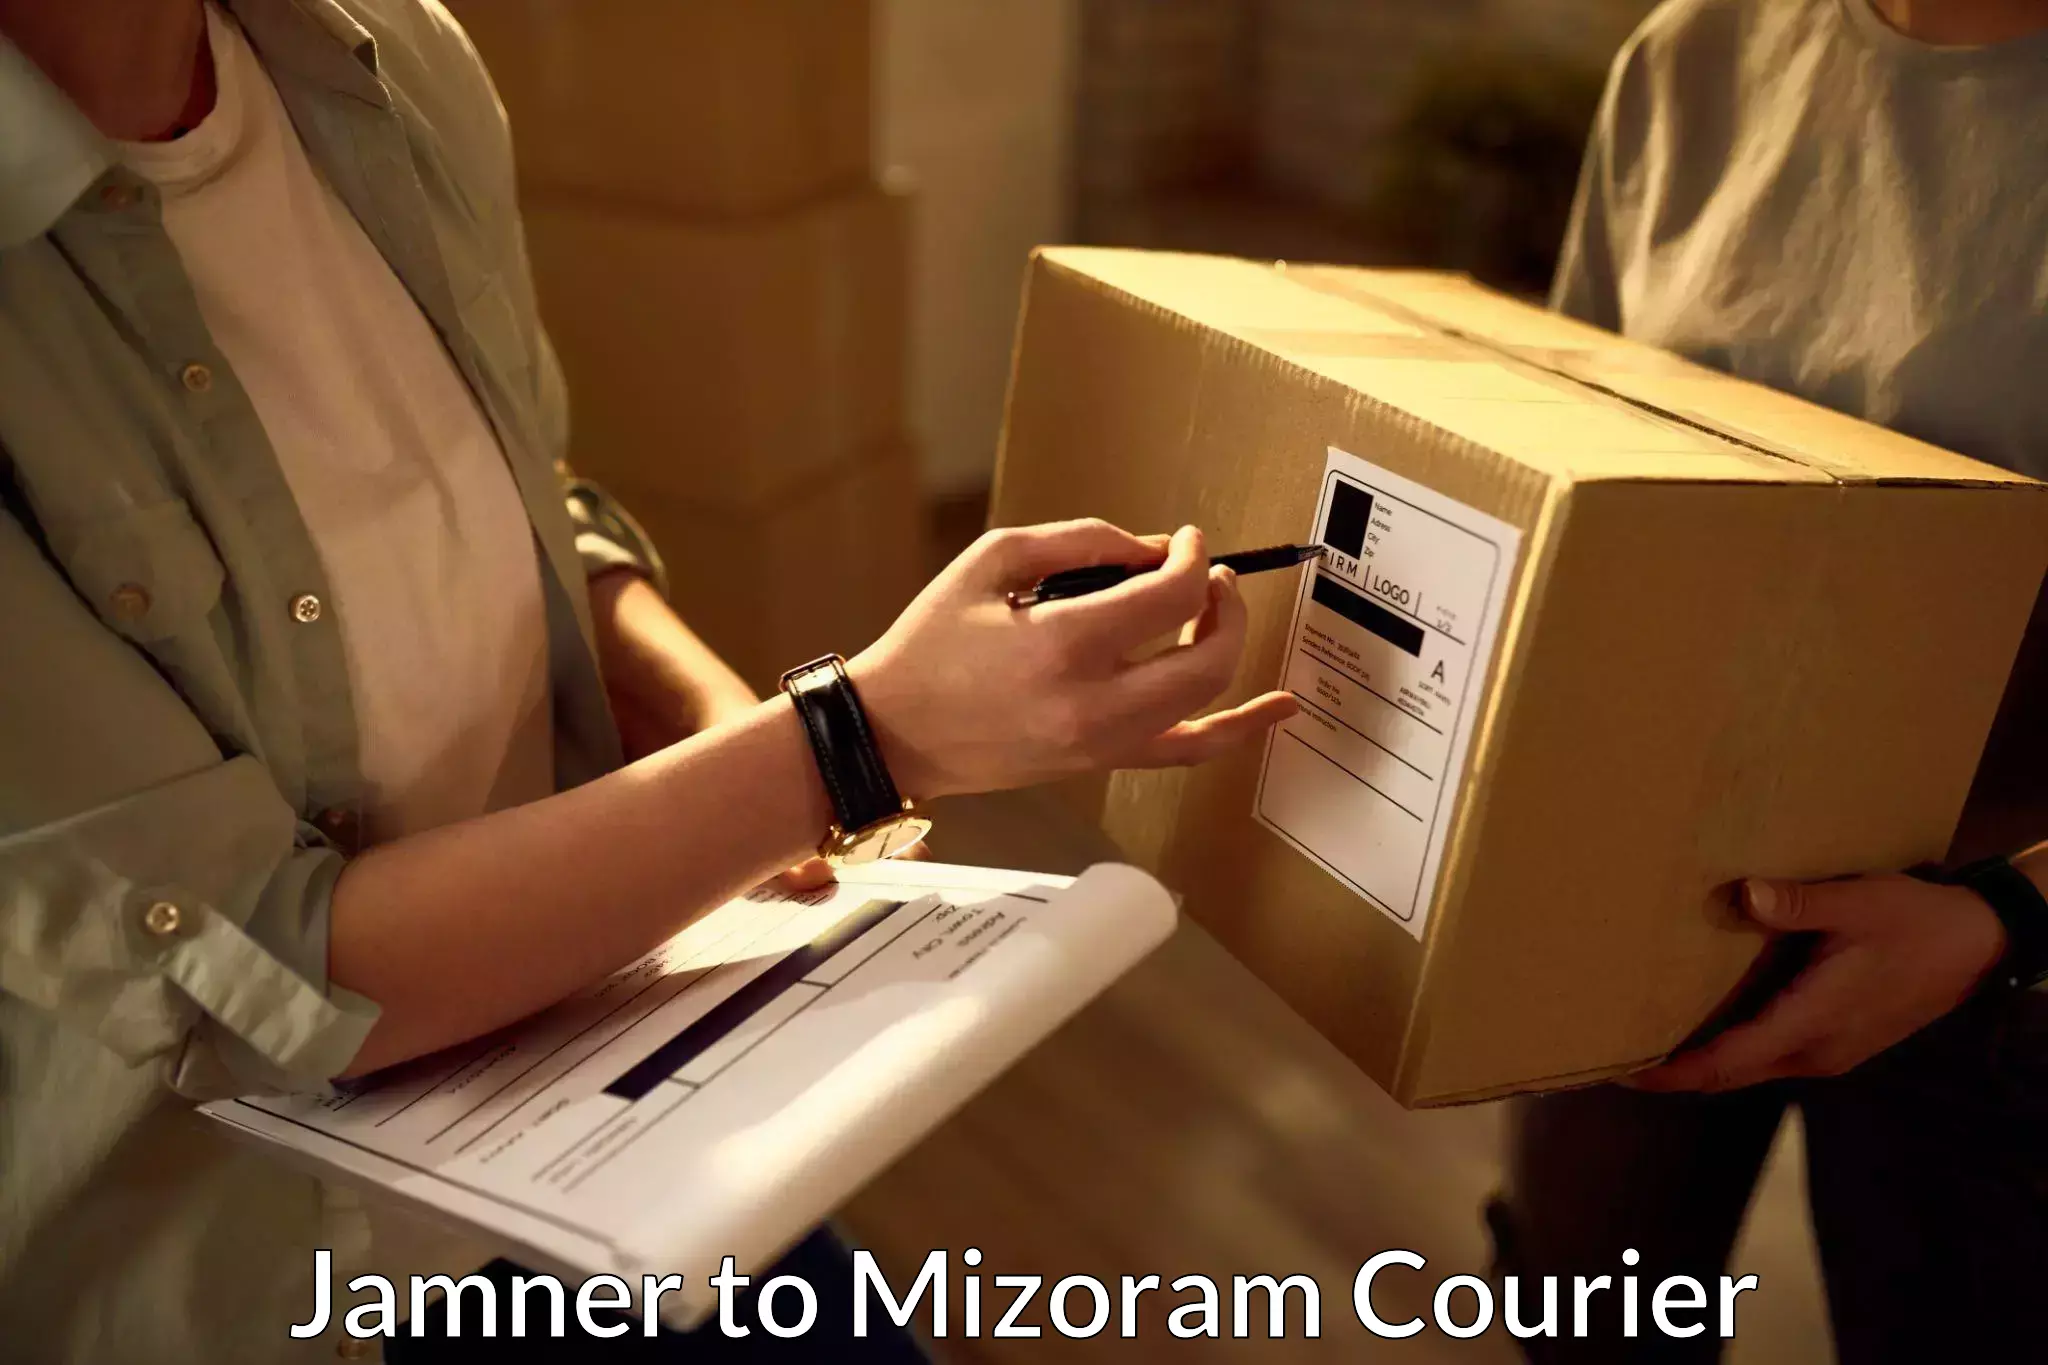 Affordable parcel service Jamner to Mizoram